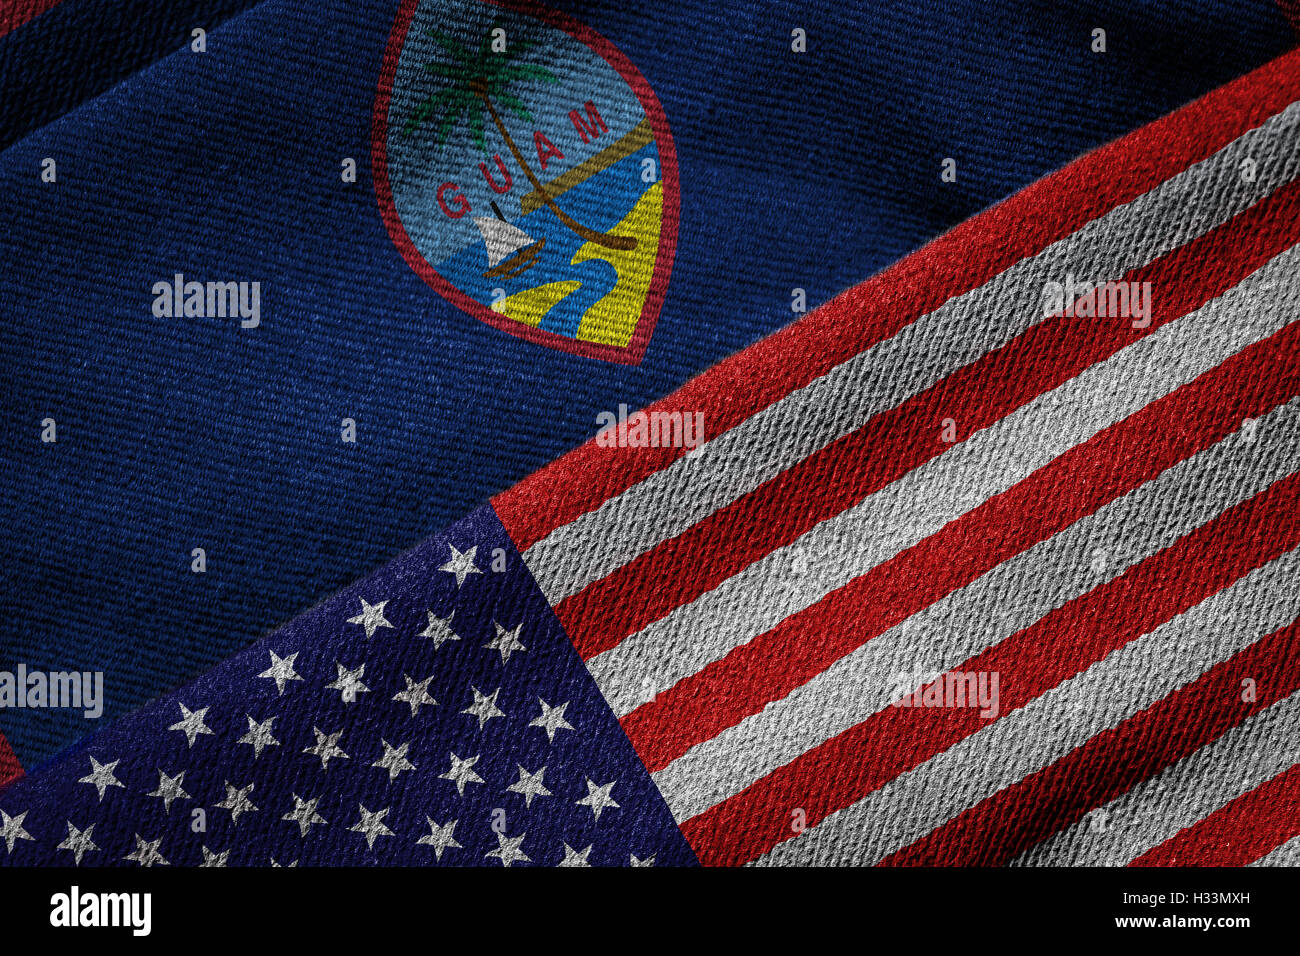 3D-Rendering der Flaggen der USA und Guam auf gewebten Stoff. Guam ist ein US-Territorium. Detaillierten Textile Muster und grunge Stockfoto